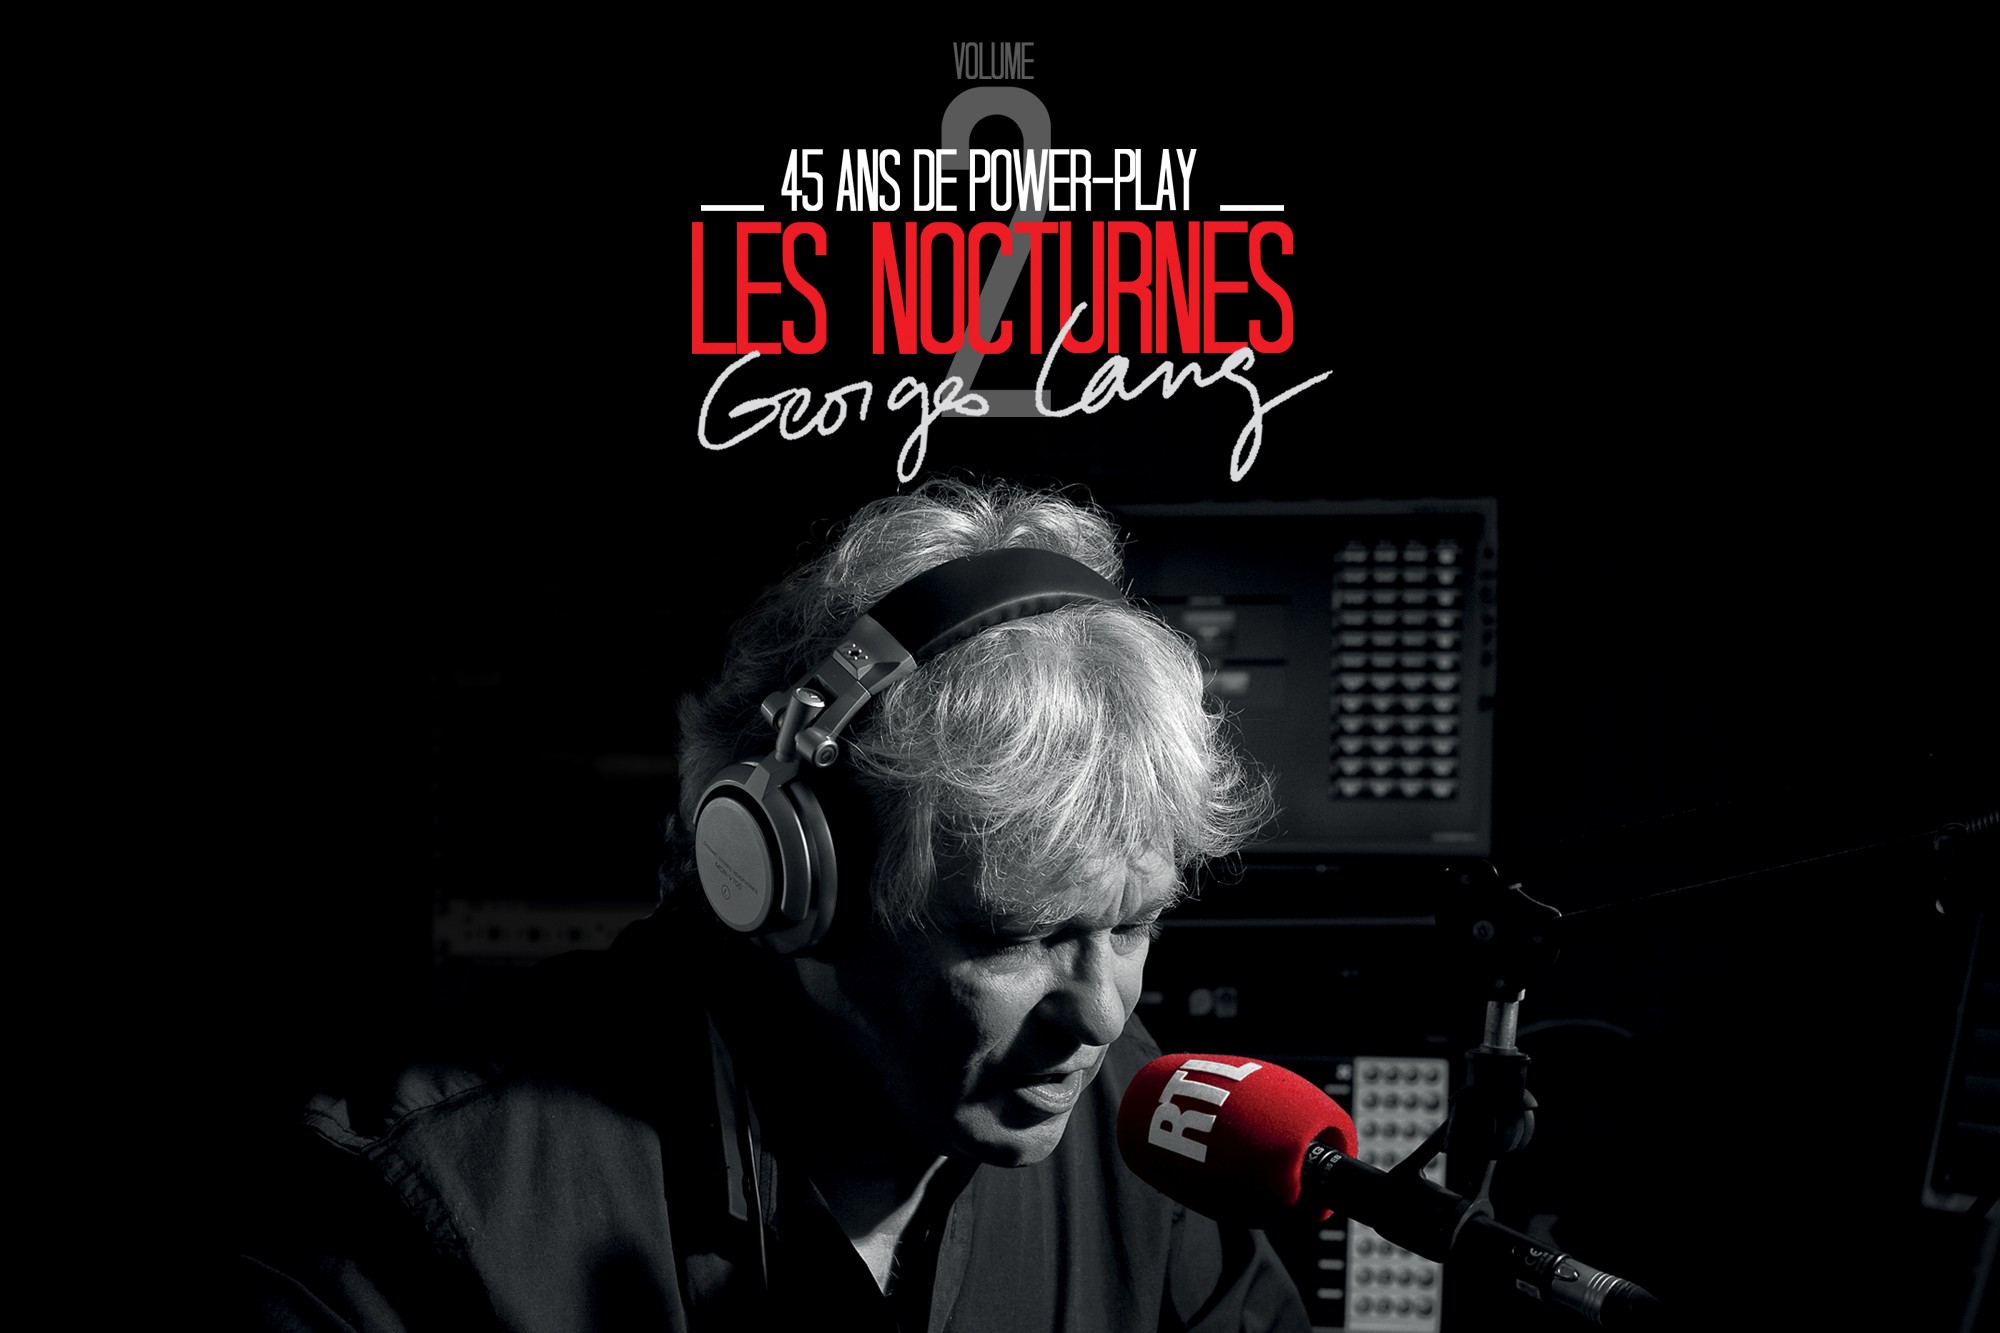 La parution de la dixième compilation "Les Nocturnes - 45 ans de Power-Play" salue la longévité à l'antenne de Georges Lang